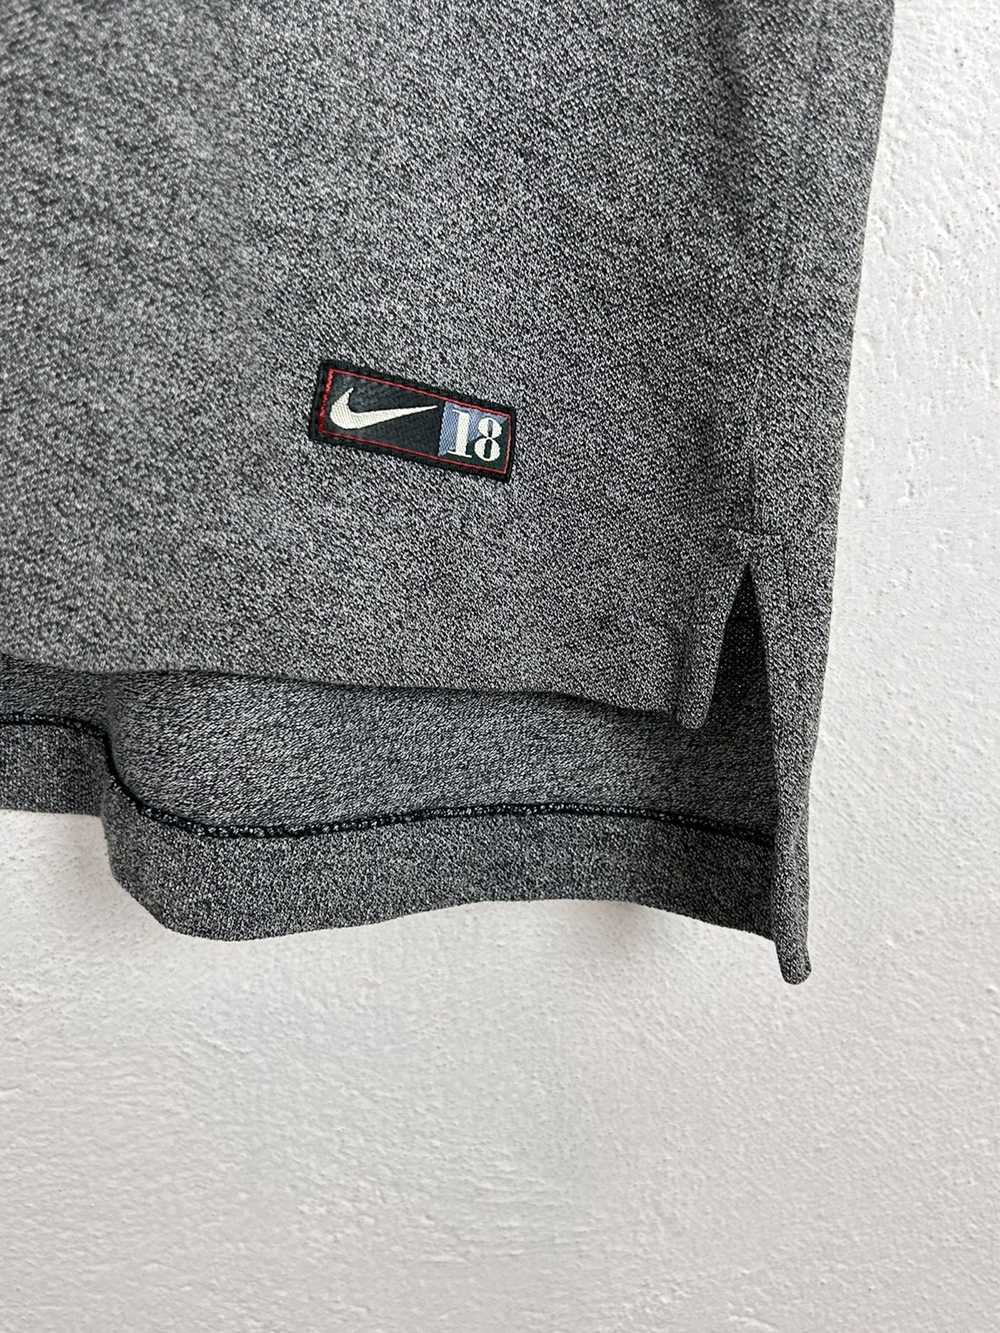 Nike × Vintage 90s Vintage Nike Golf 18 Embroider… - image 4